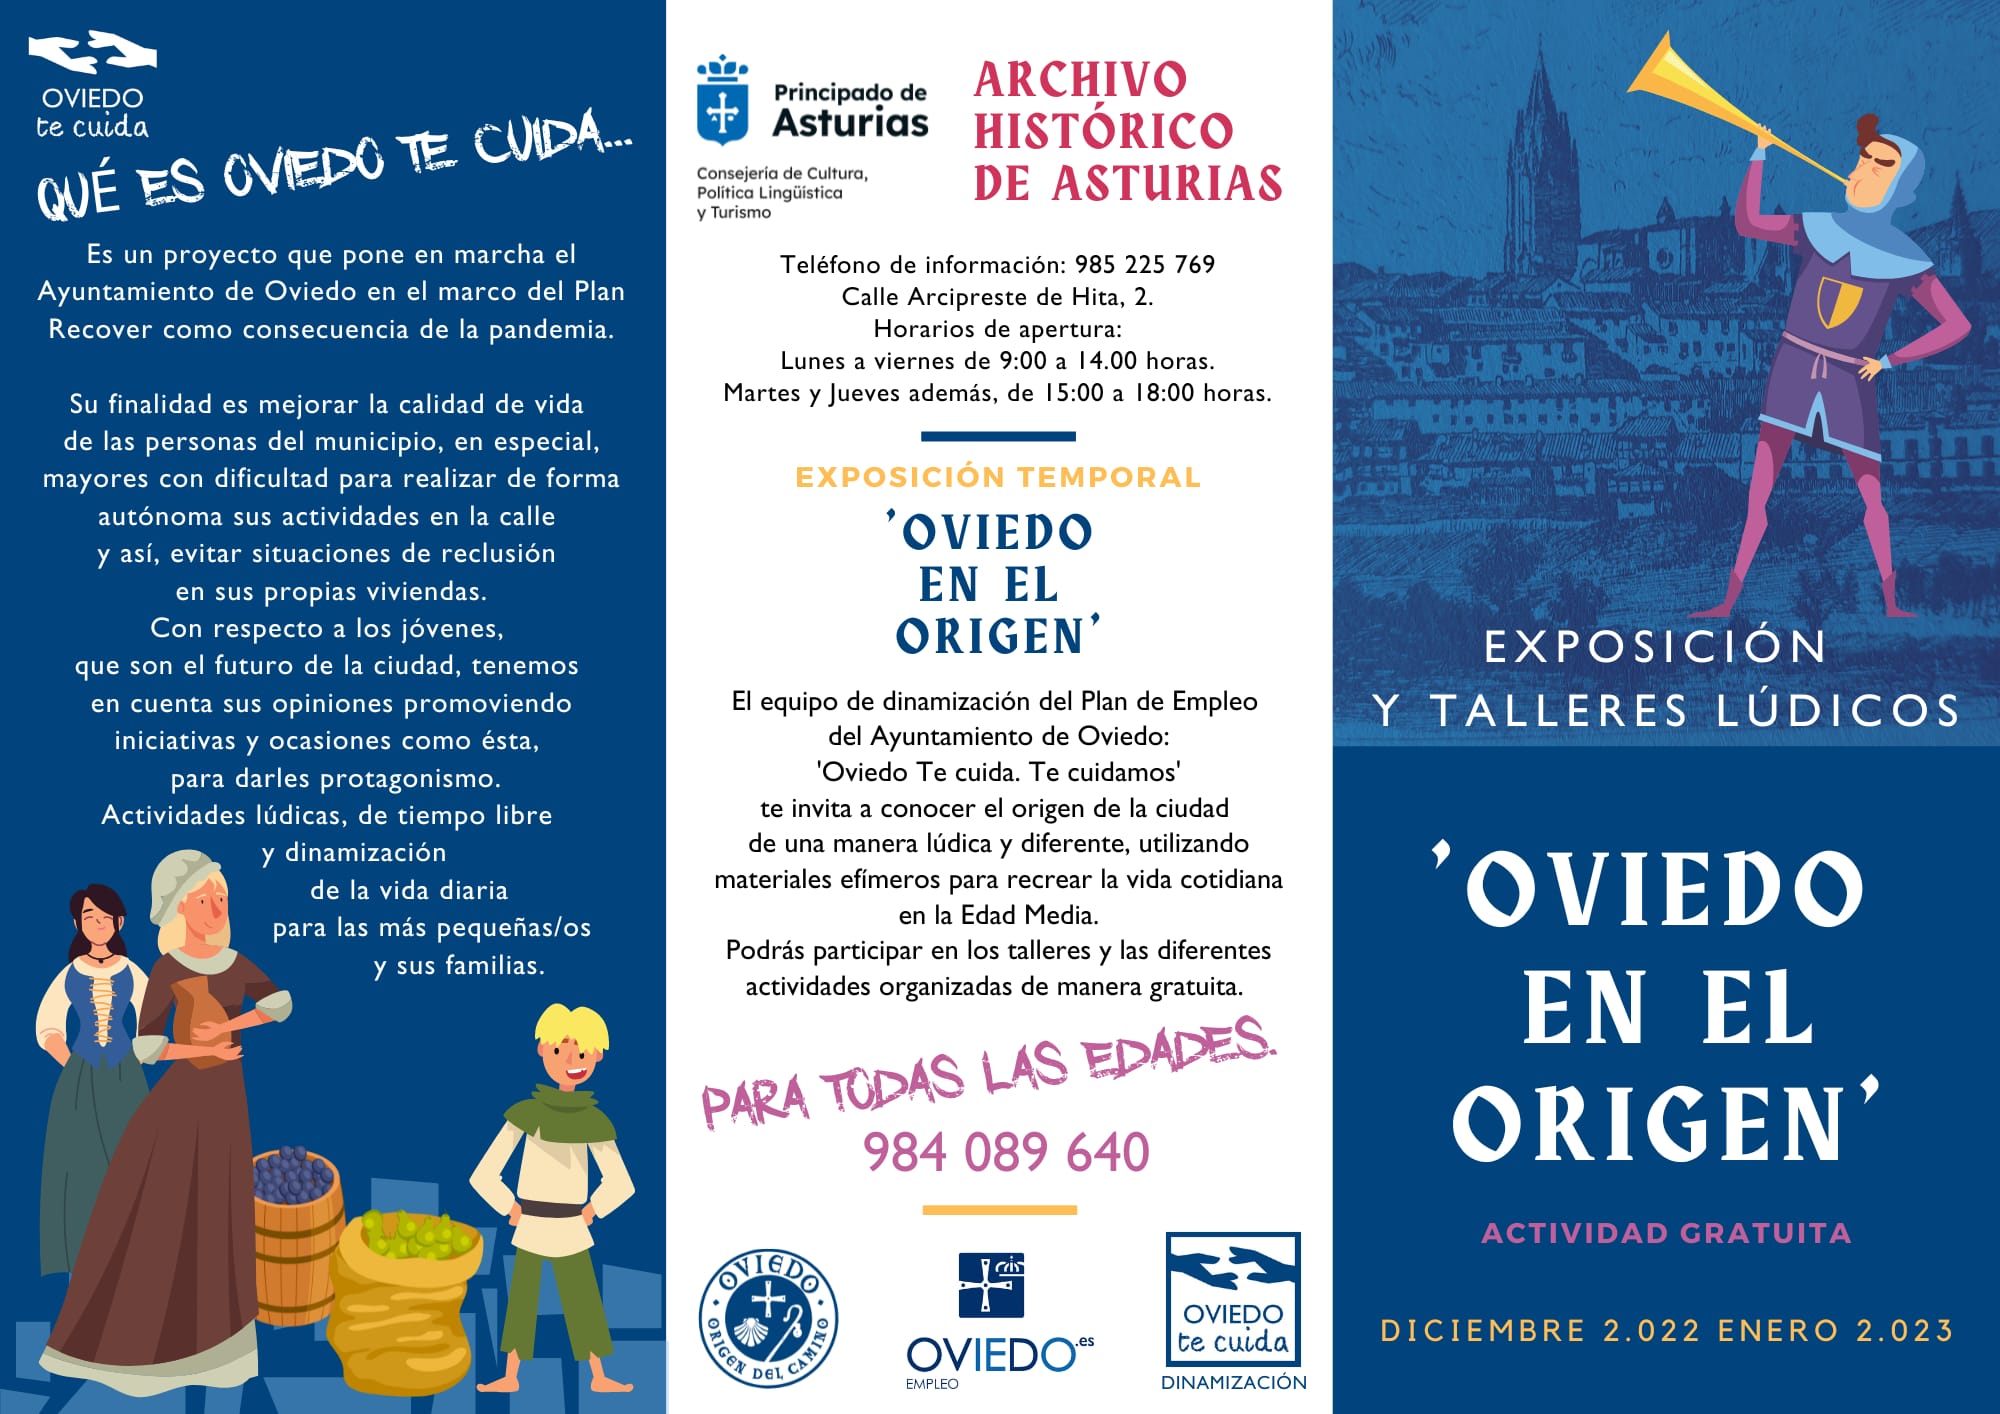 Oviedo en el Origen